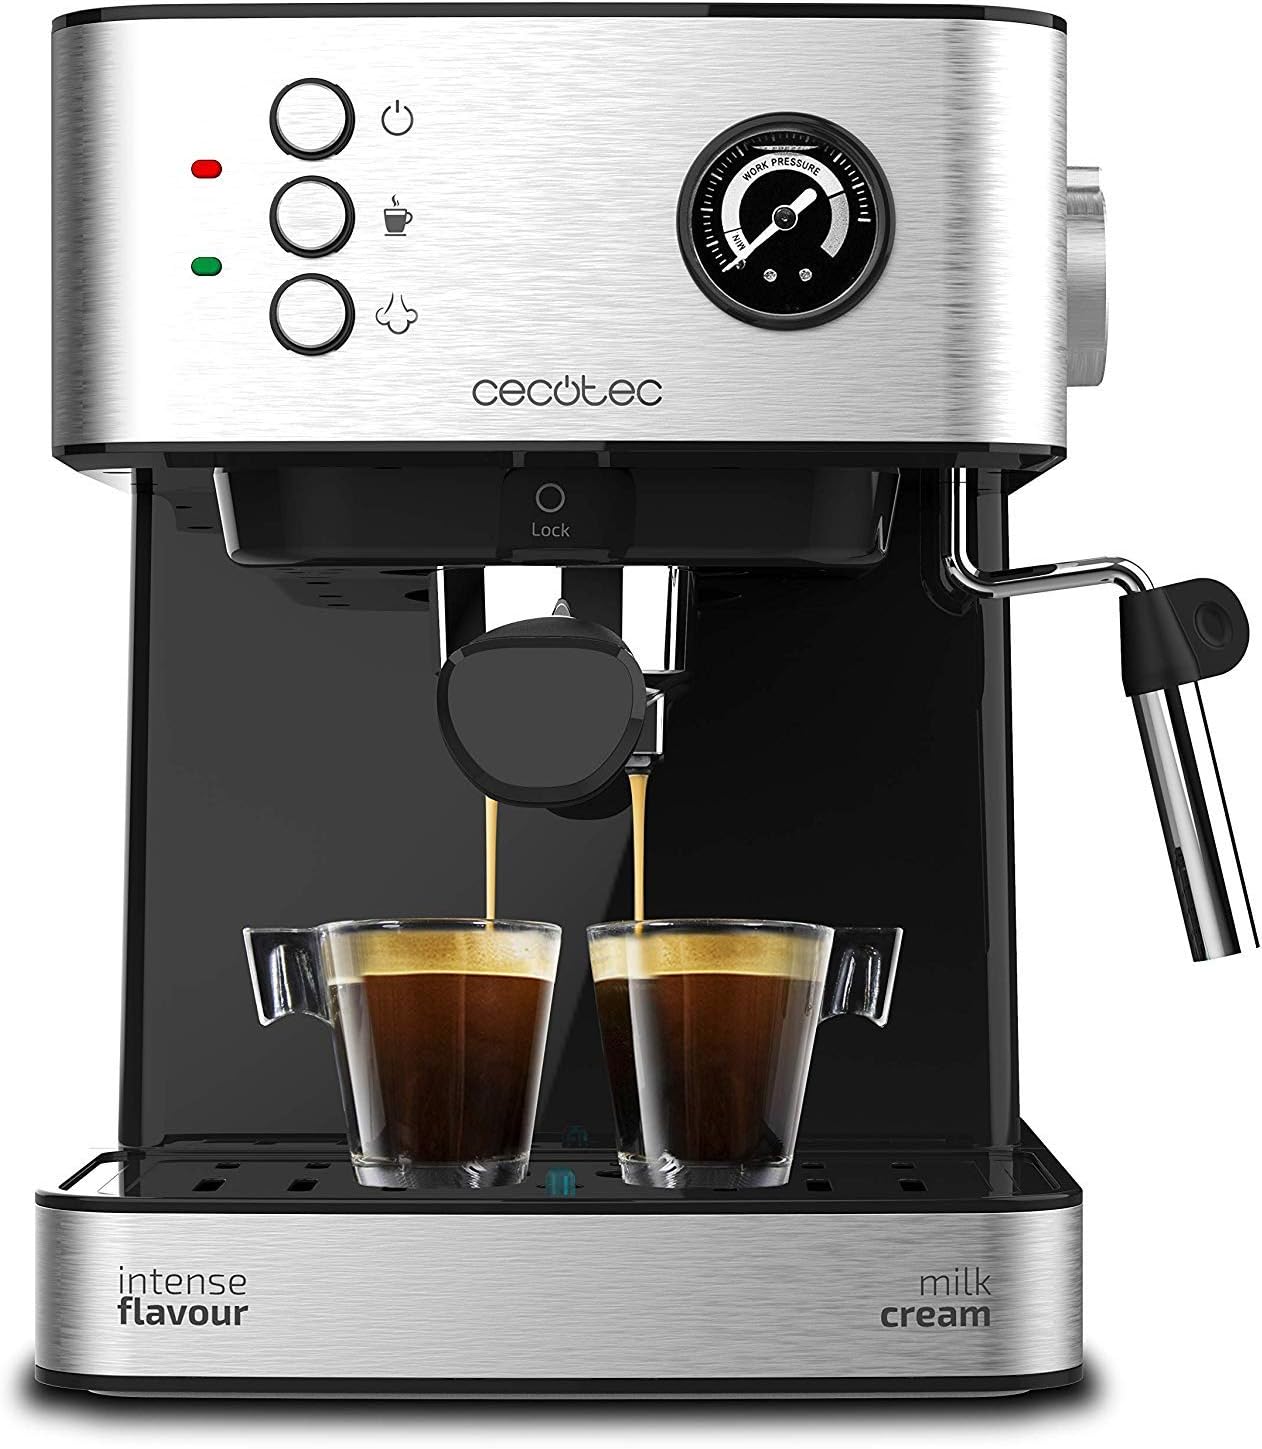 le migliori macchine per caffè con cappuccinatore, macchina da caffè, cappuccinatore, Cecotec PowerEspresso 20 Professionale